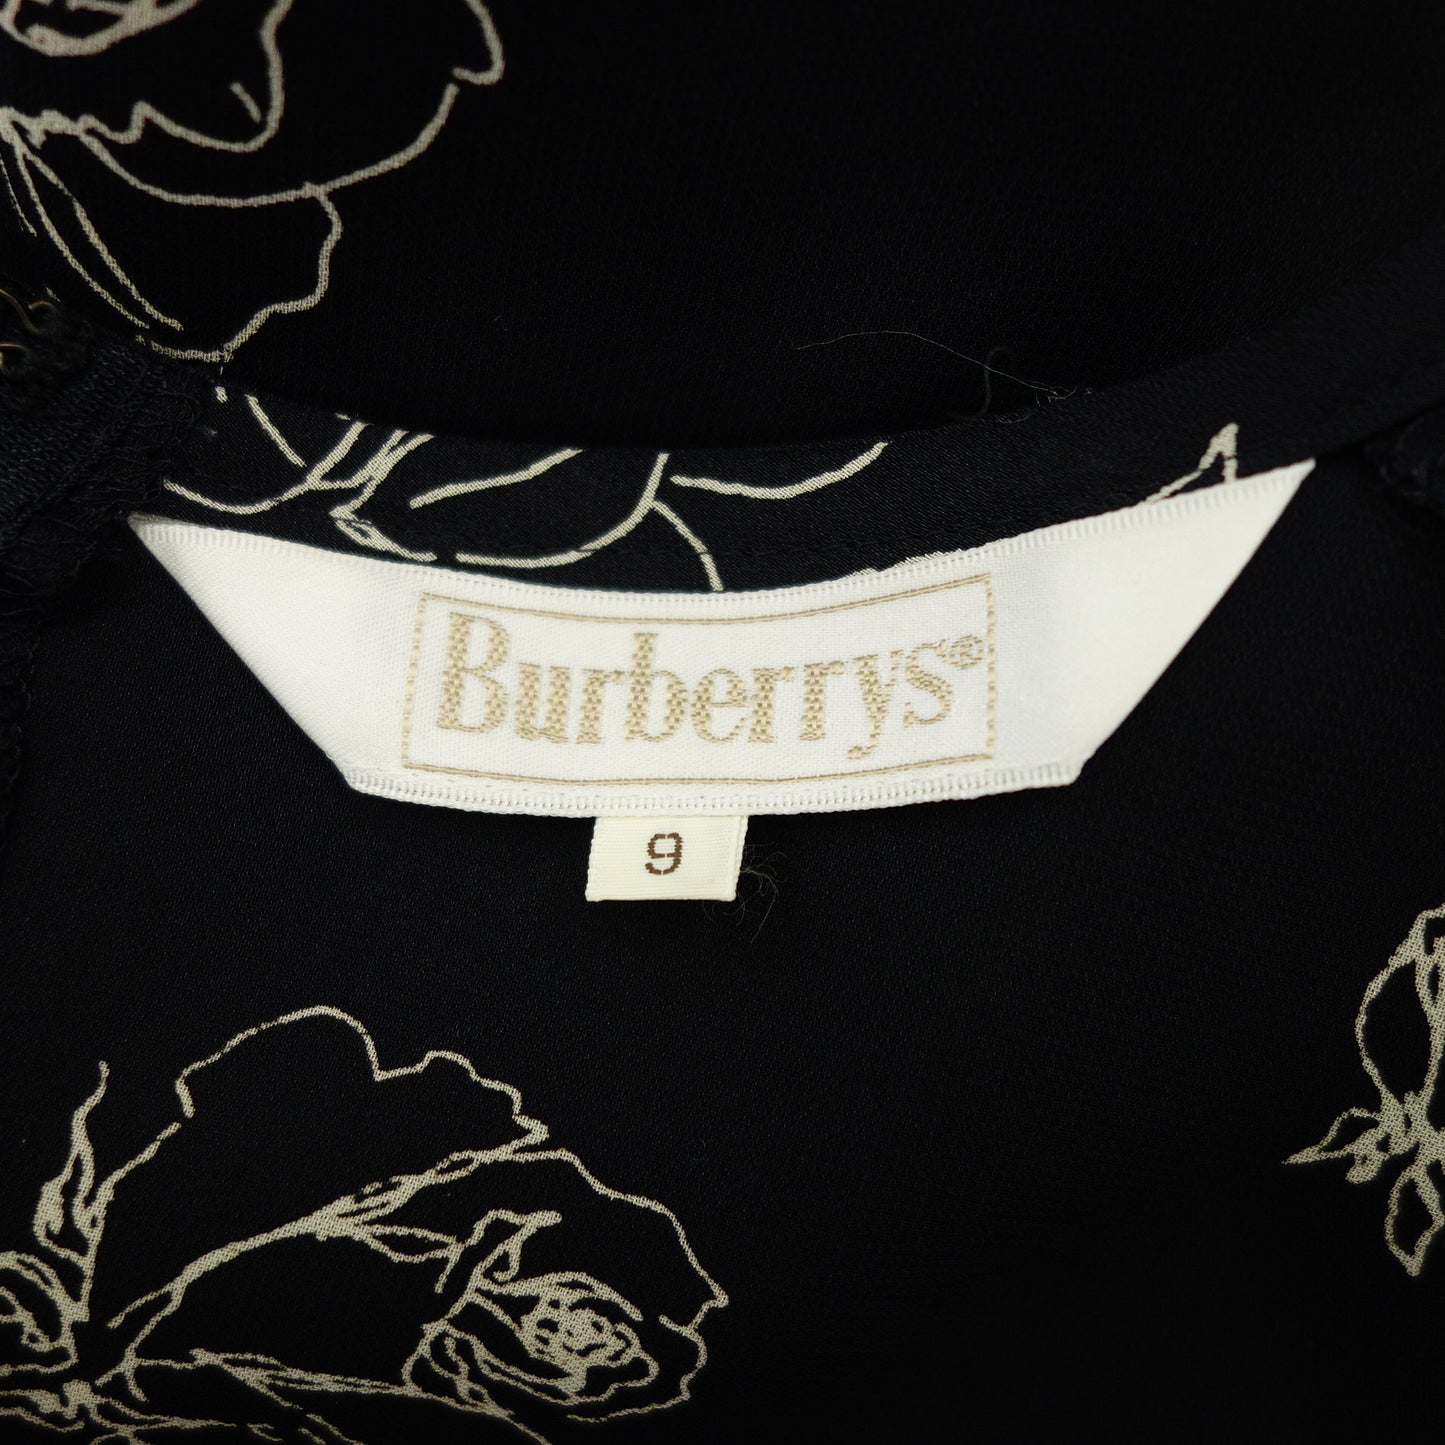 バーバリーズ ロングワンピース 花柄 9 レディース ネイビー Burberrys【AFB35】【中古】